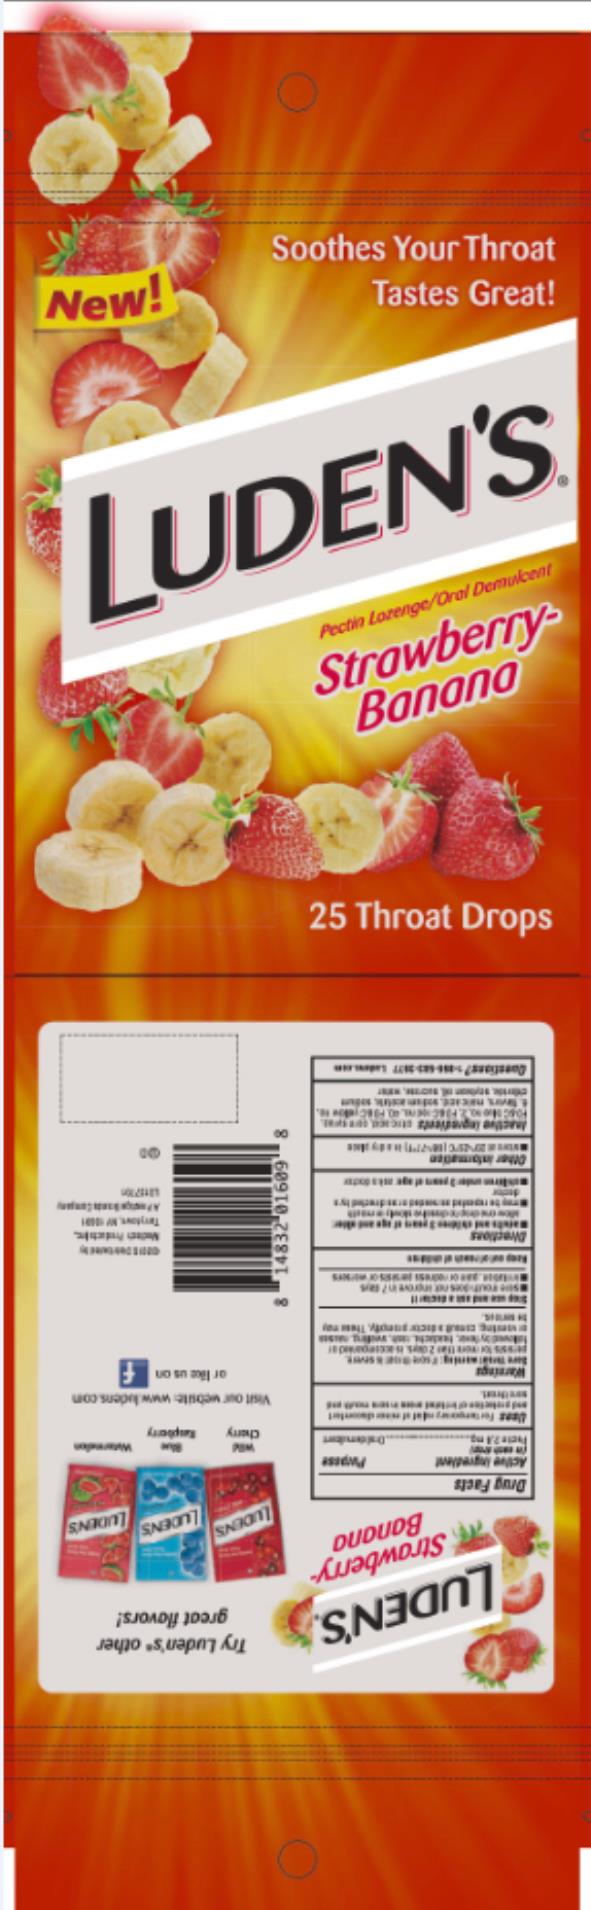 Luden’s Strawberry-Banana
Pectin lozenge / Oral Demulcent 
25 Throat drops
